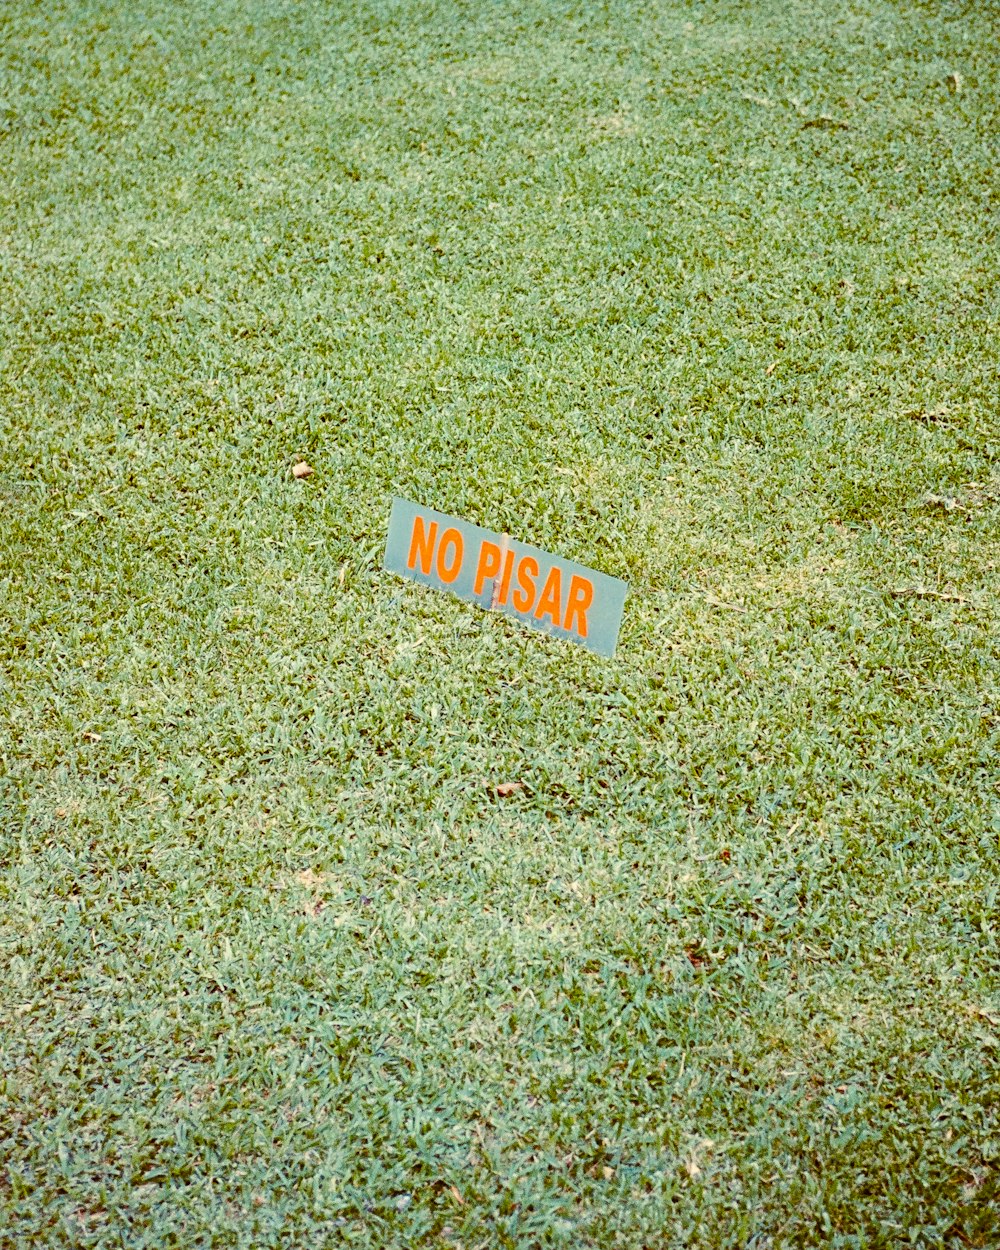 un signe qui est assis dans l’herbe